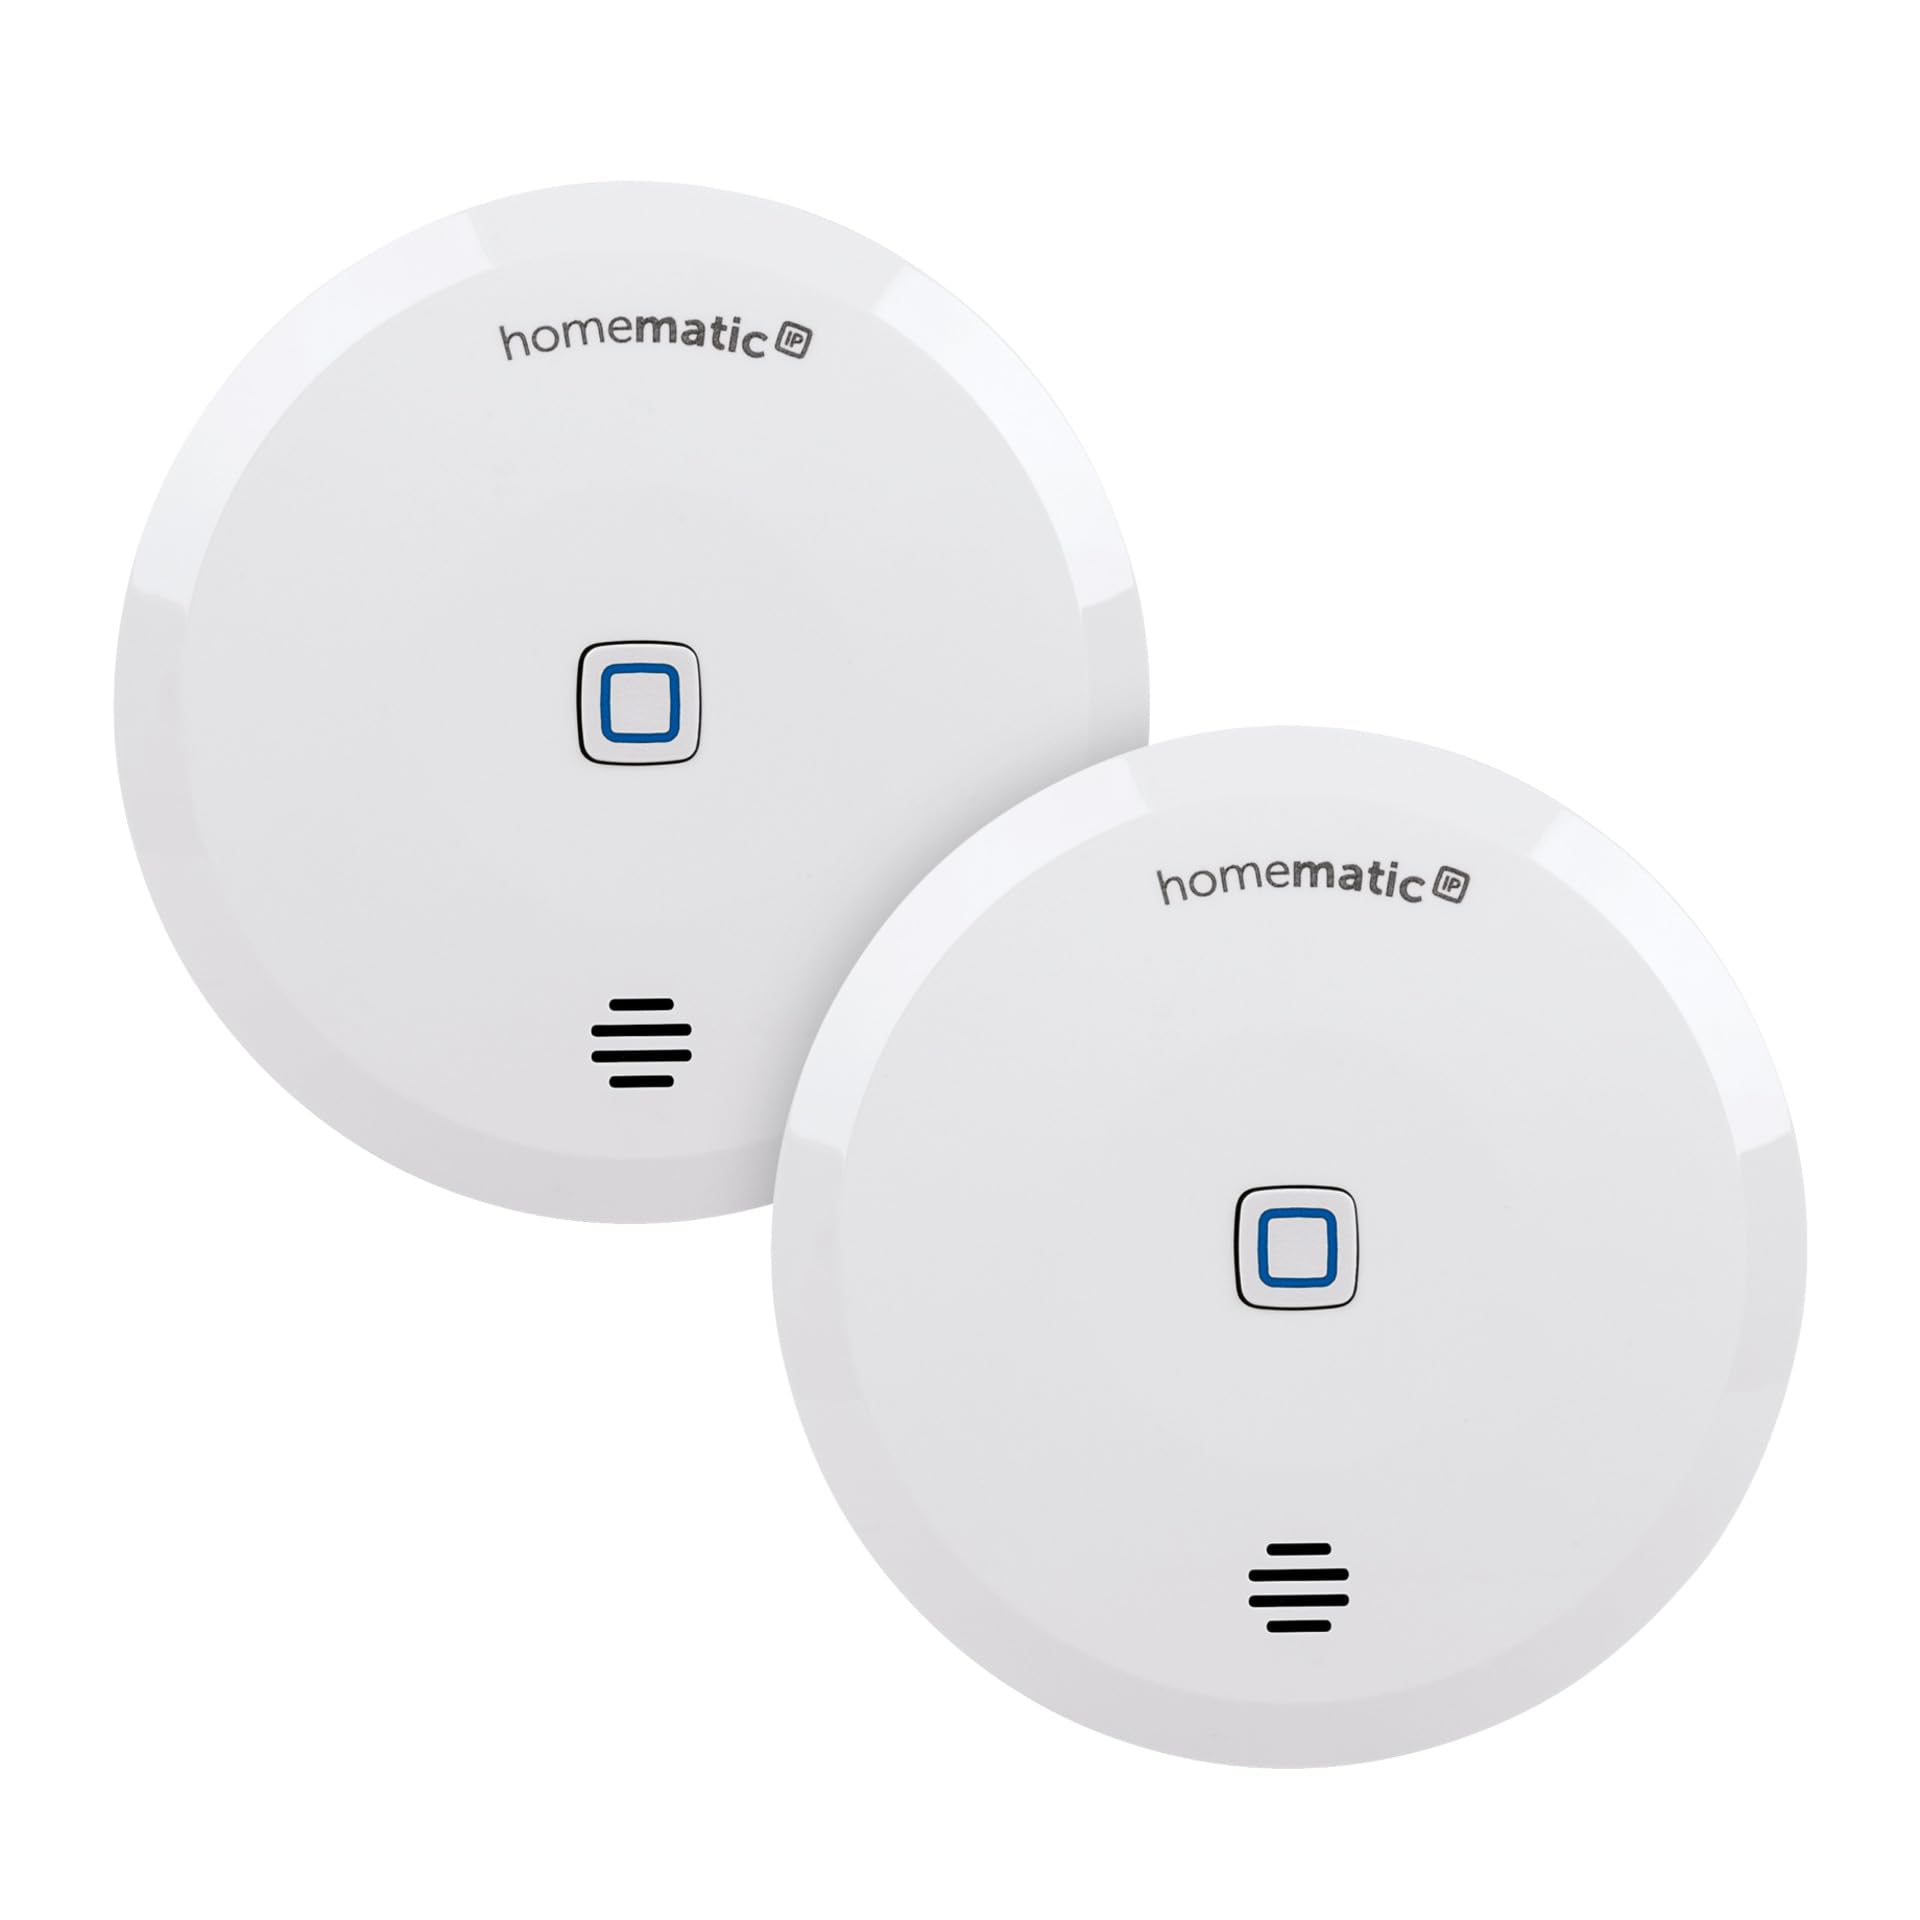 Homematic IP Smart Home Wassersensor, Wassermelder für zuverlässige Alarmierung per Sirene und Push-Benachrichtigung in der Smartphone-App bei Feuchtigkeit und Wasser, 151694A0 (2er-Set)